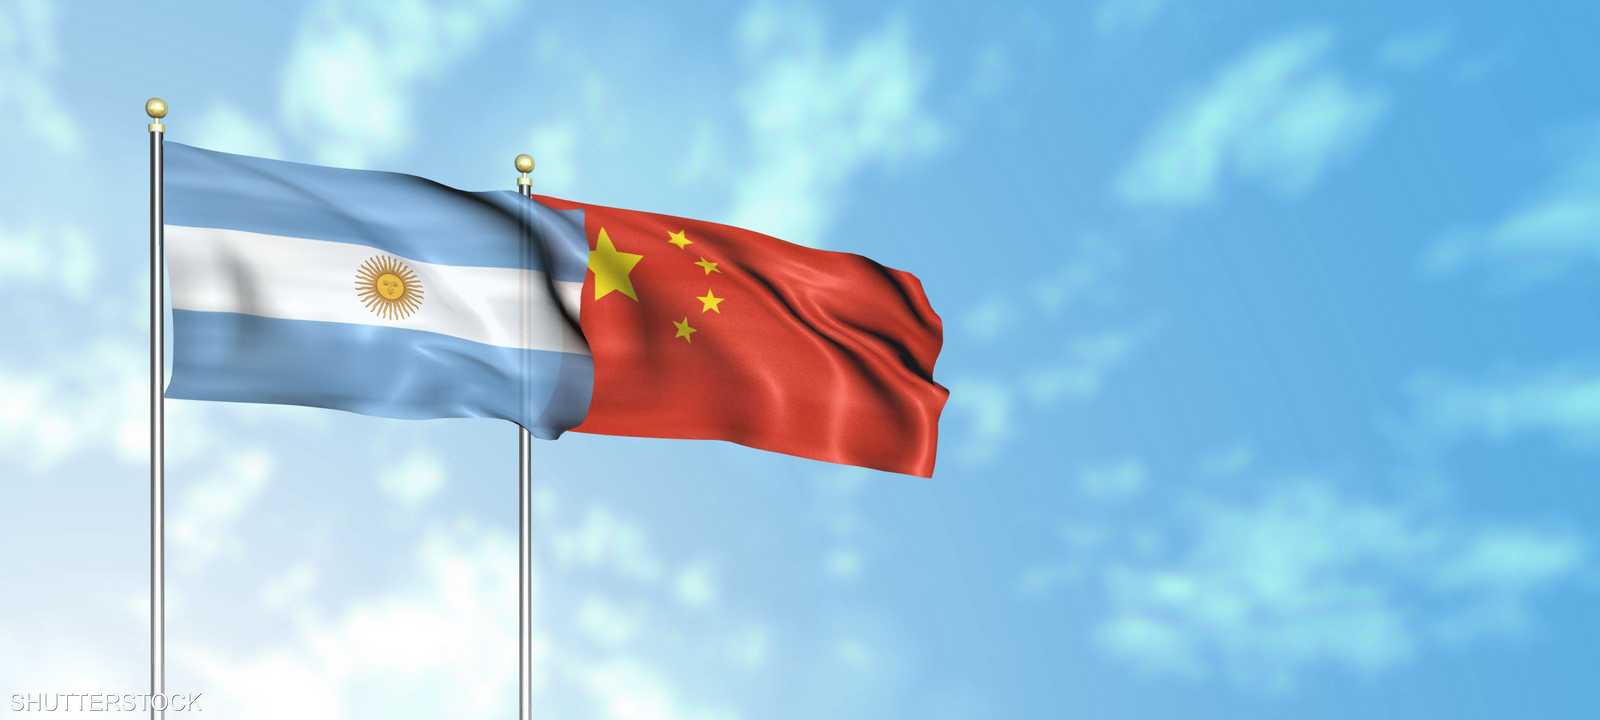 الصين والأرجنتين